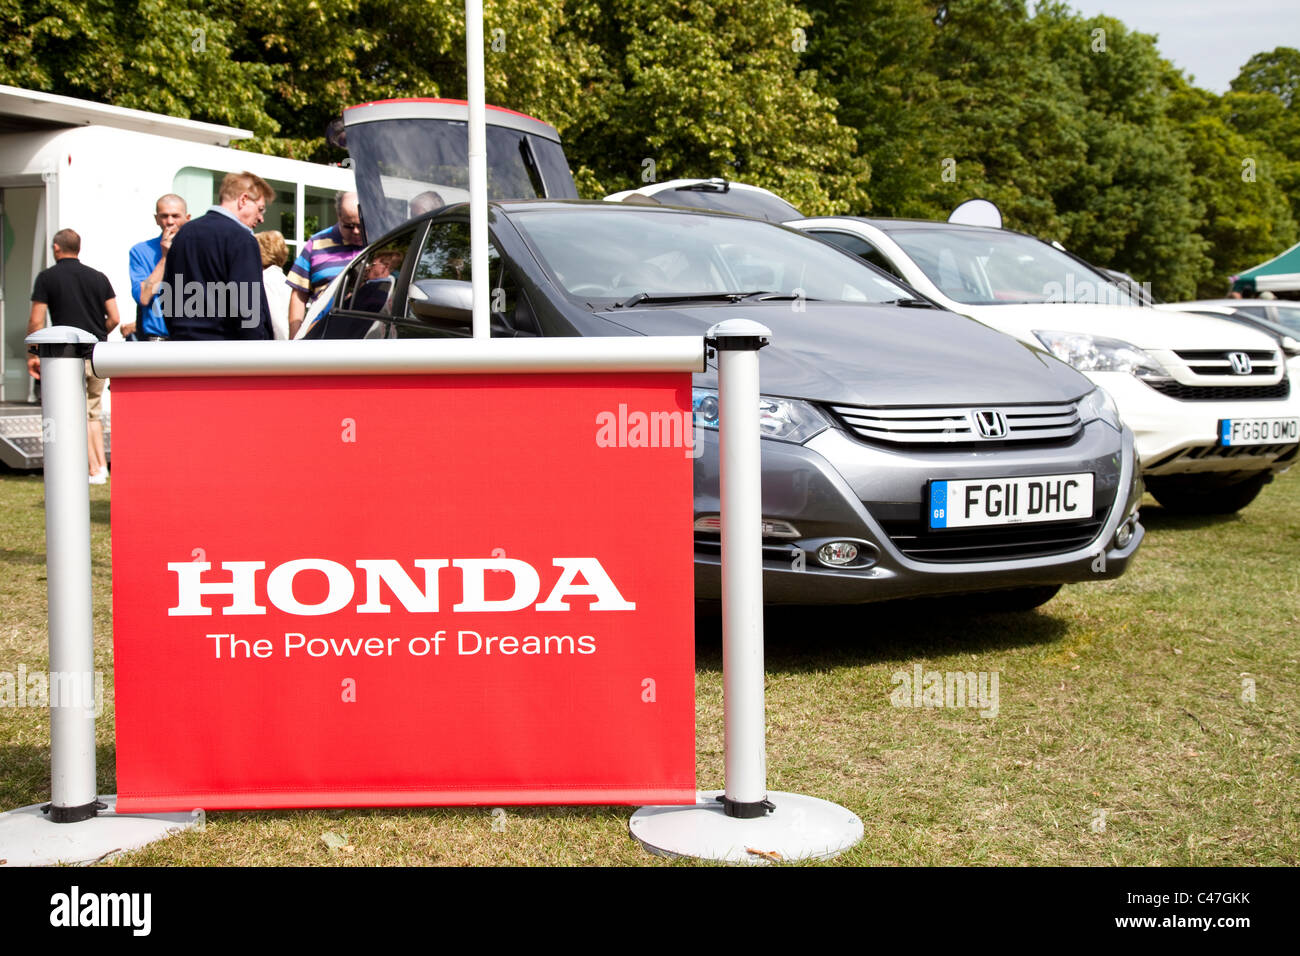 Concessionnaire automobile Honda promotion à un événement salon de l'England UK Banque D'Images